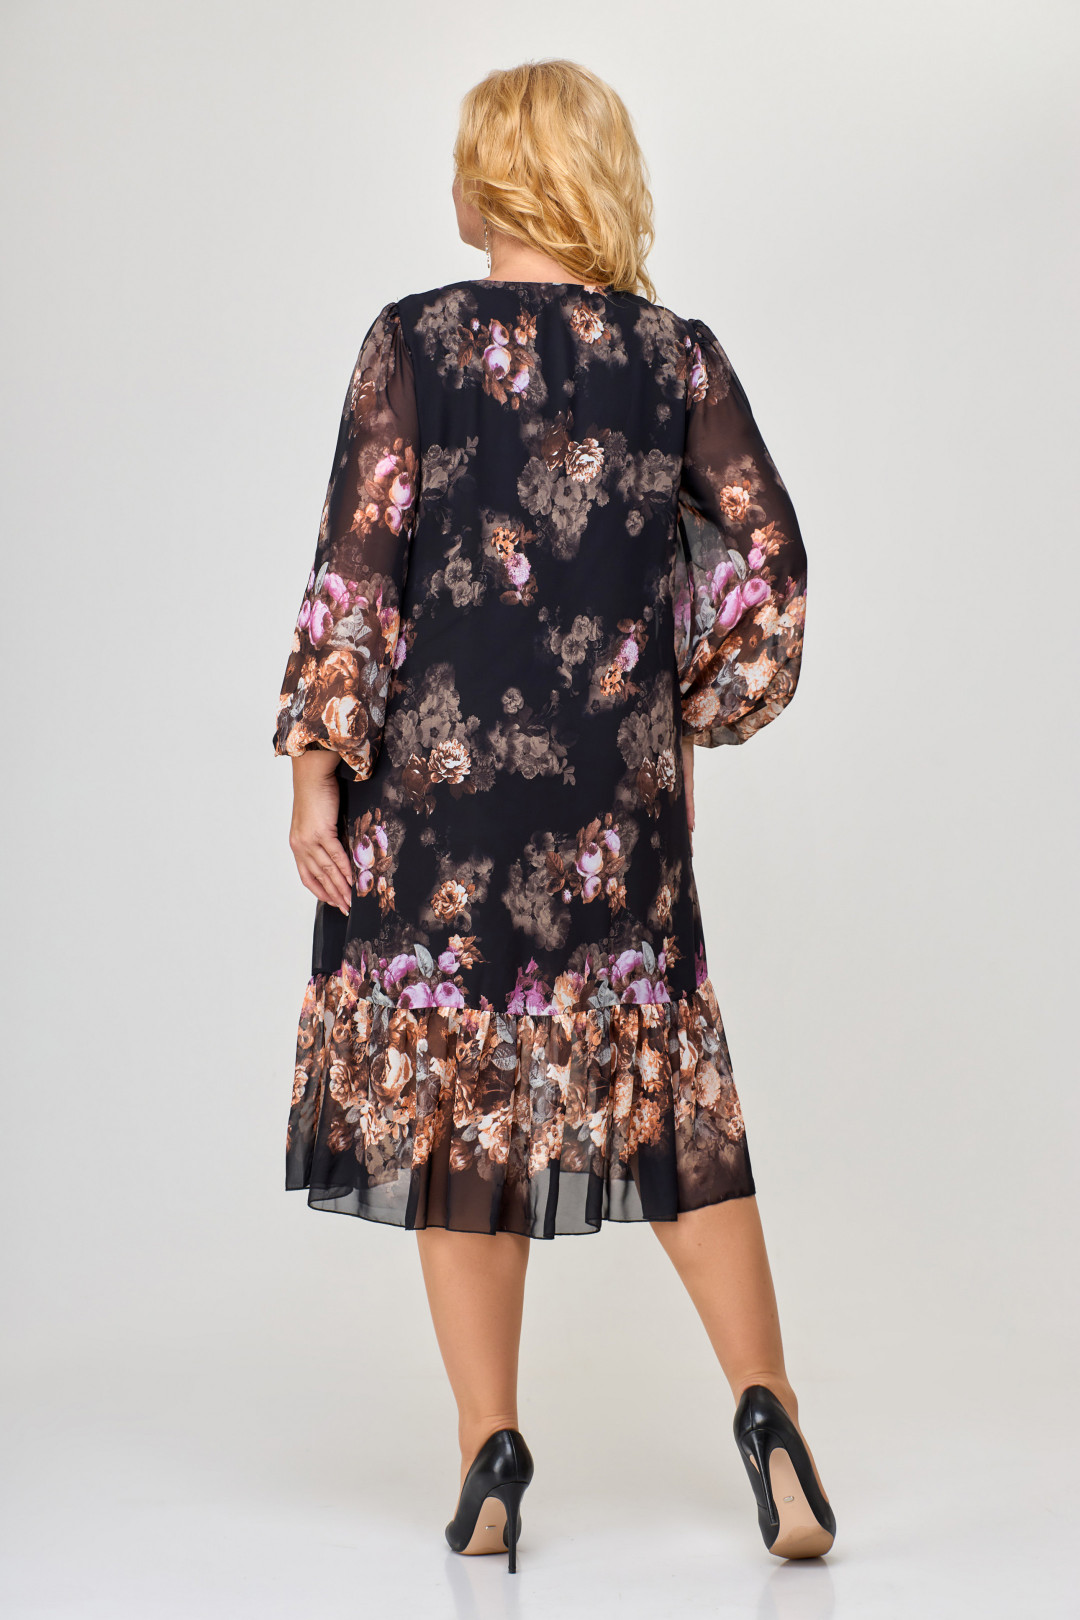 Платье Светлана-Стиль 1754 черный+цветы